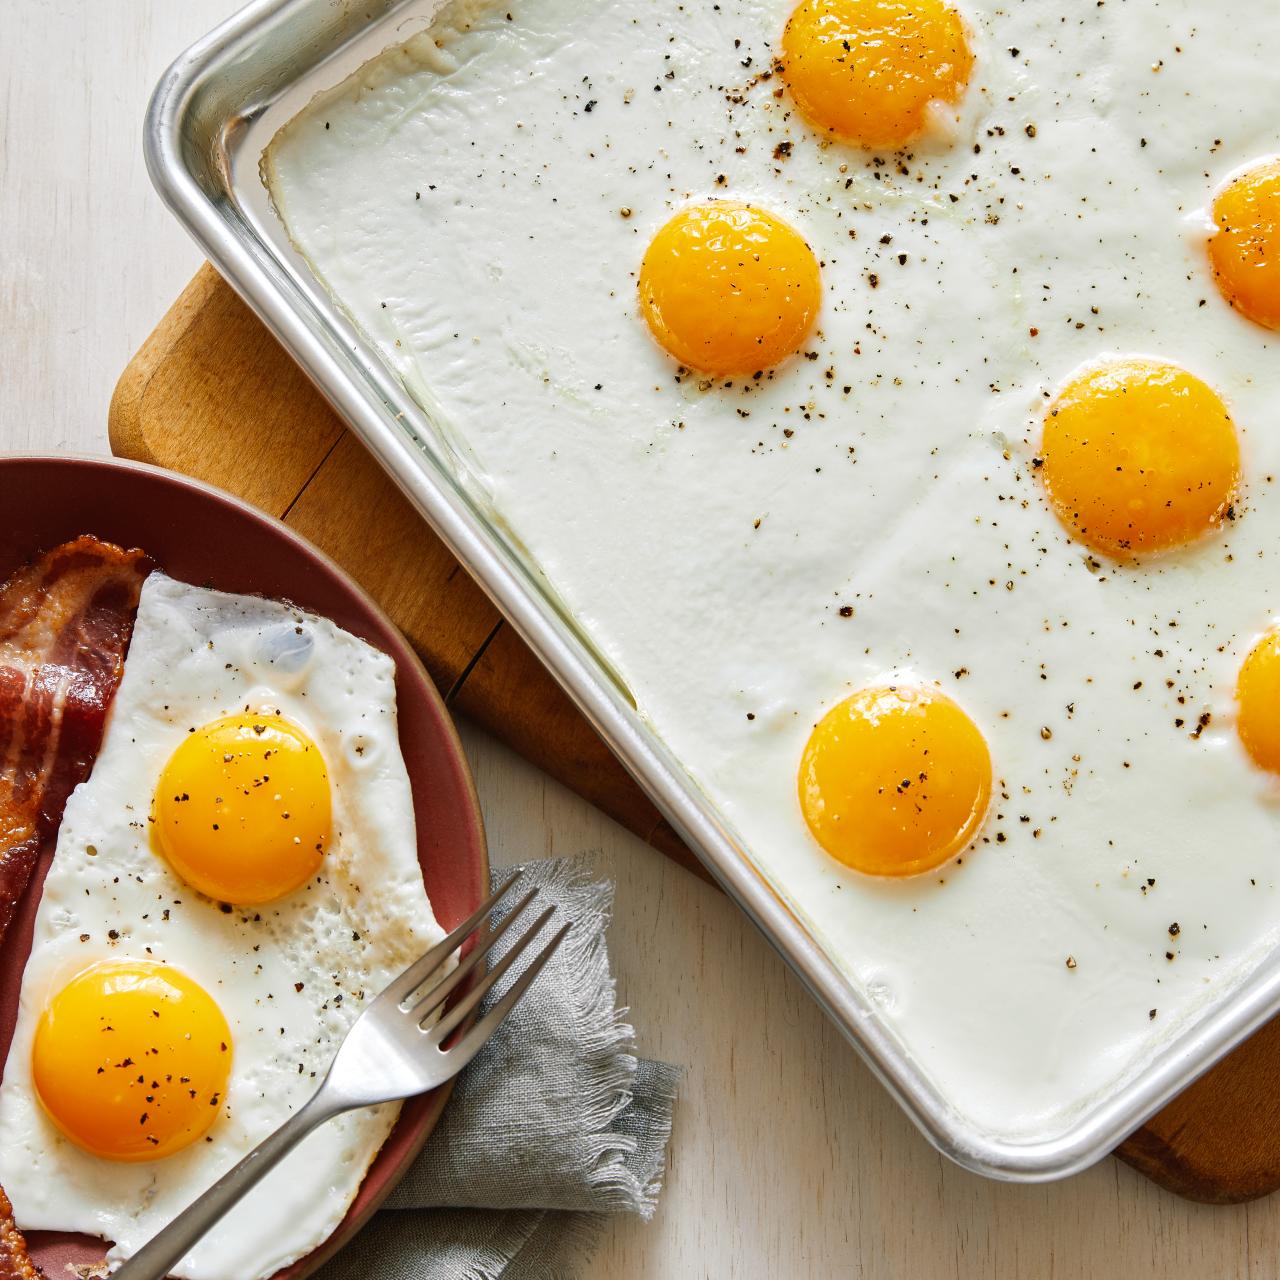 Sheet Pan Eggs - Julie's Eats & Treats ®